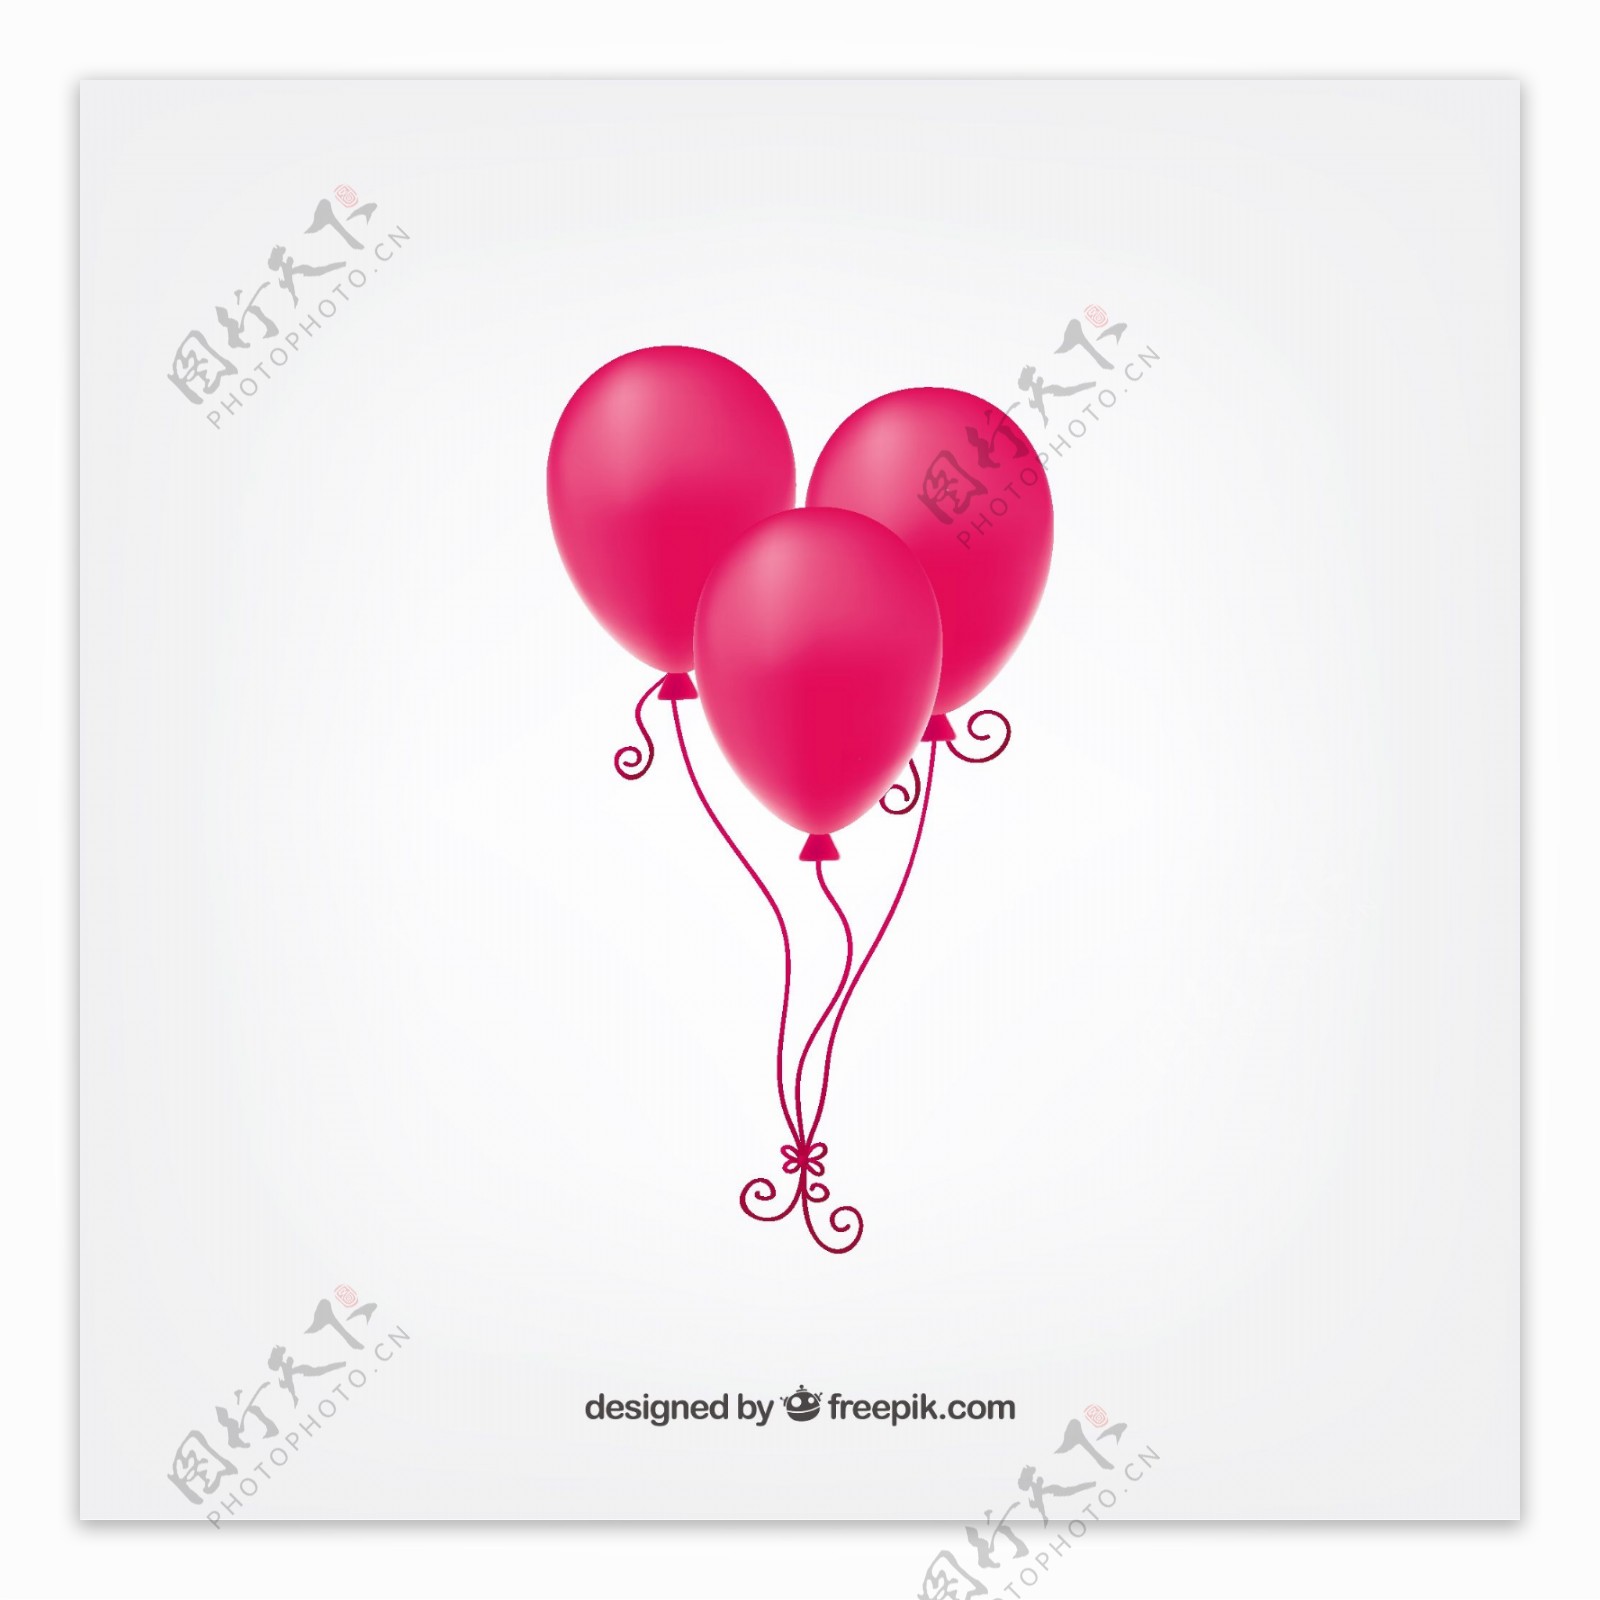 粉红色的气球